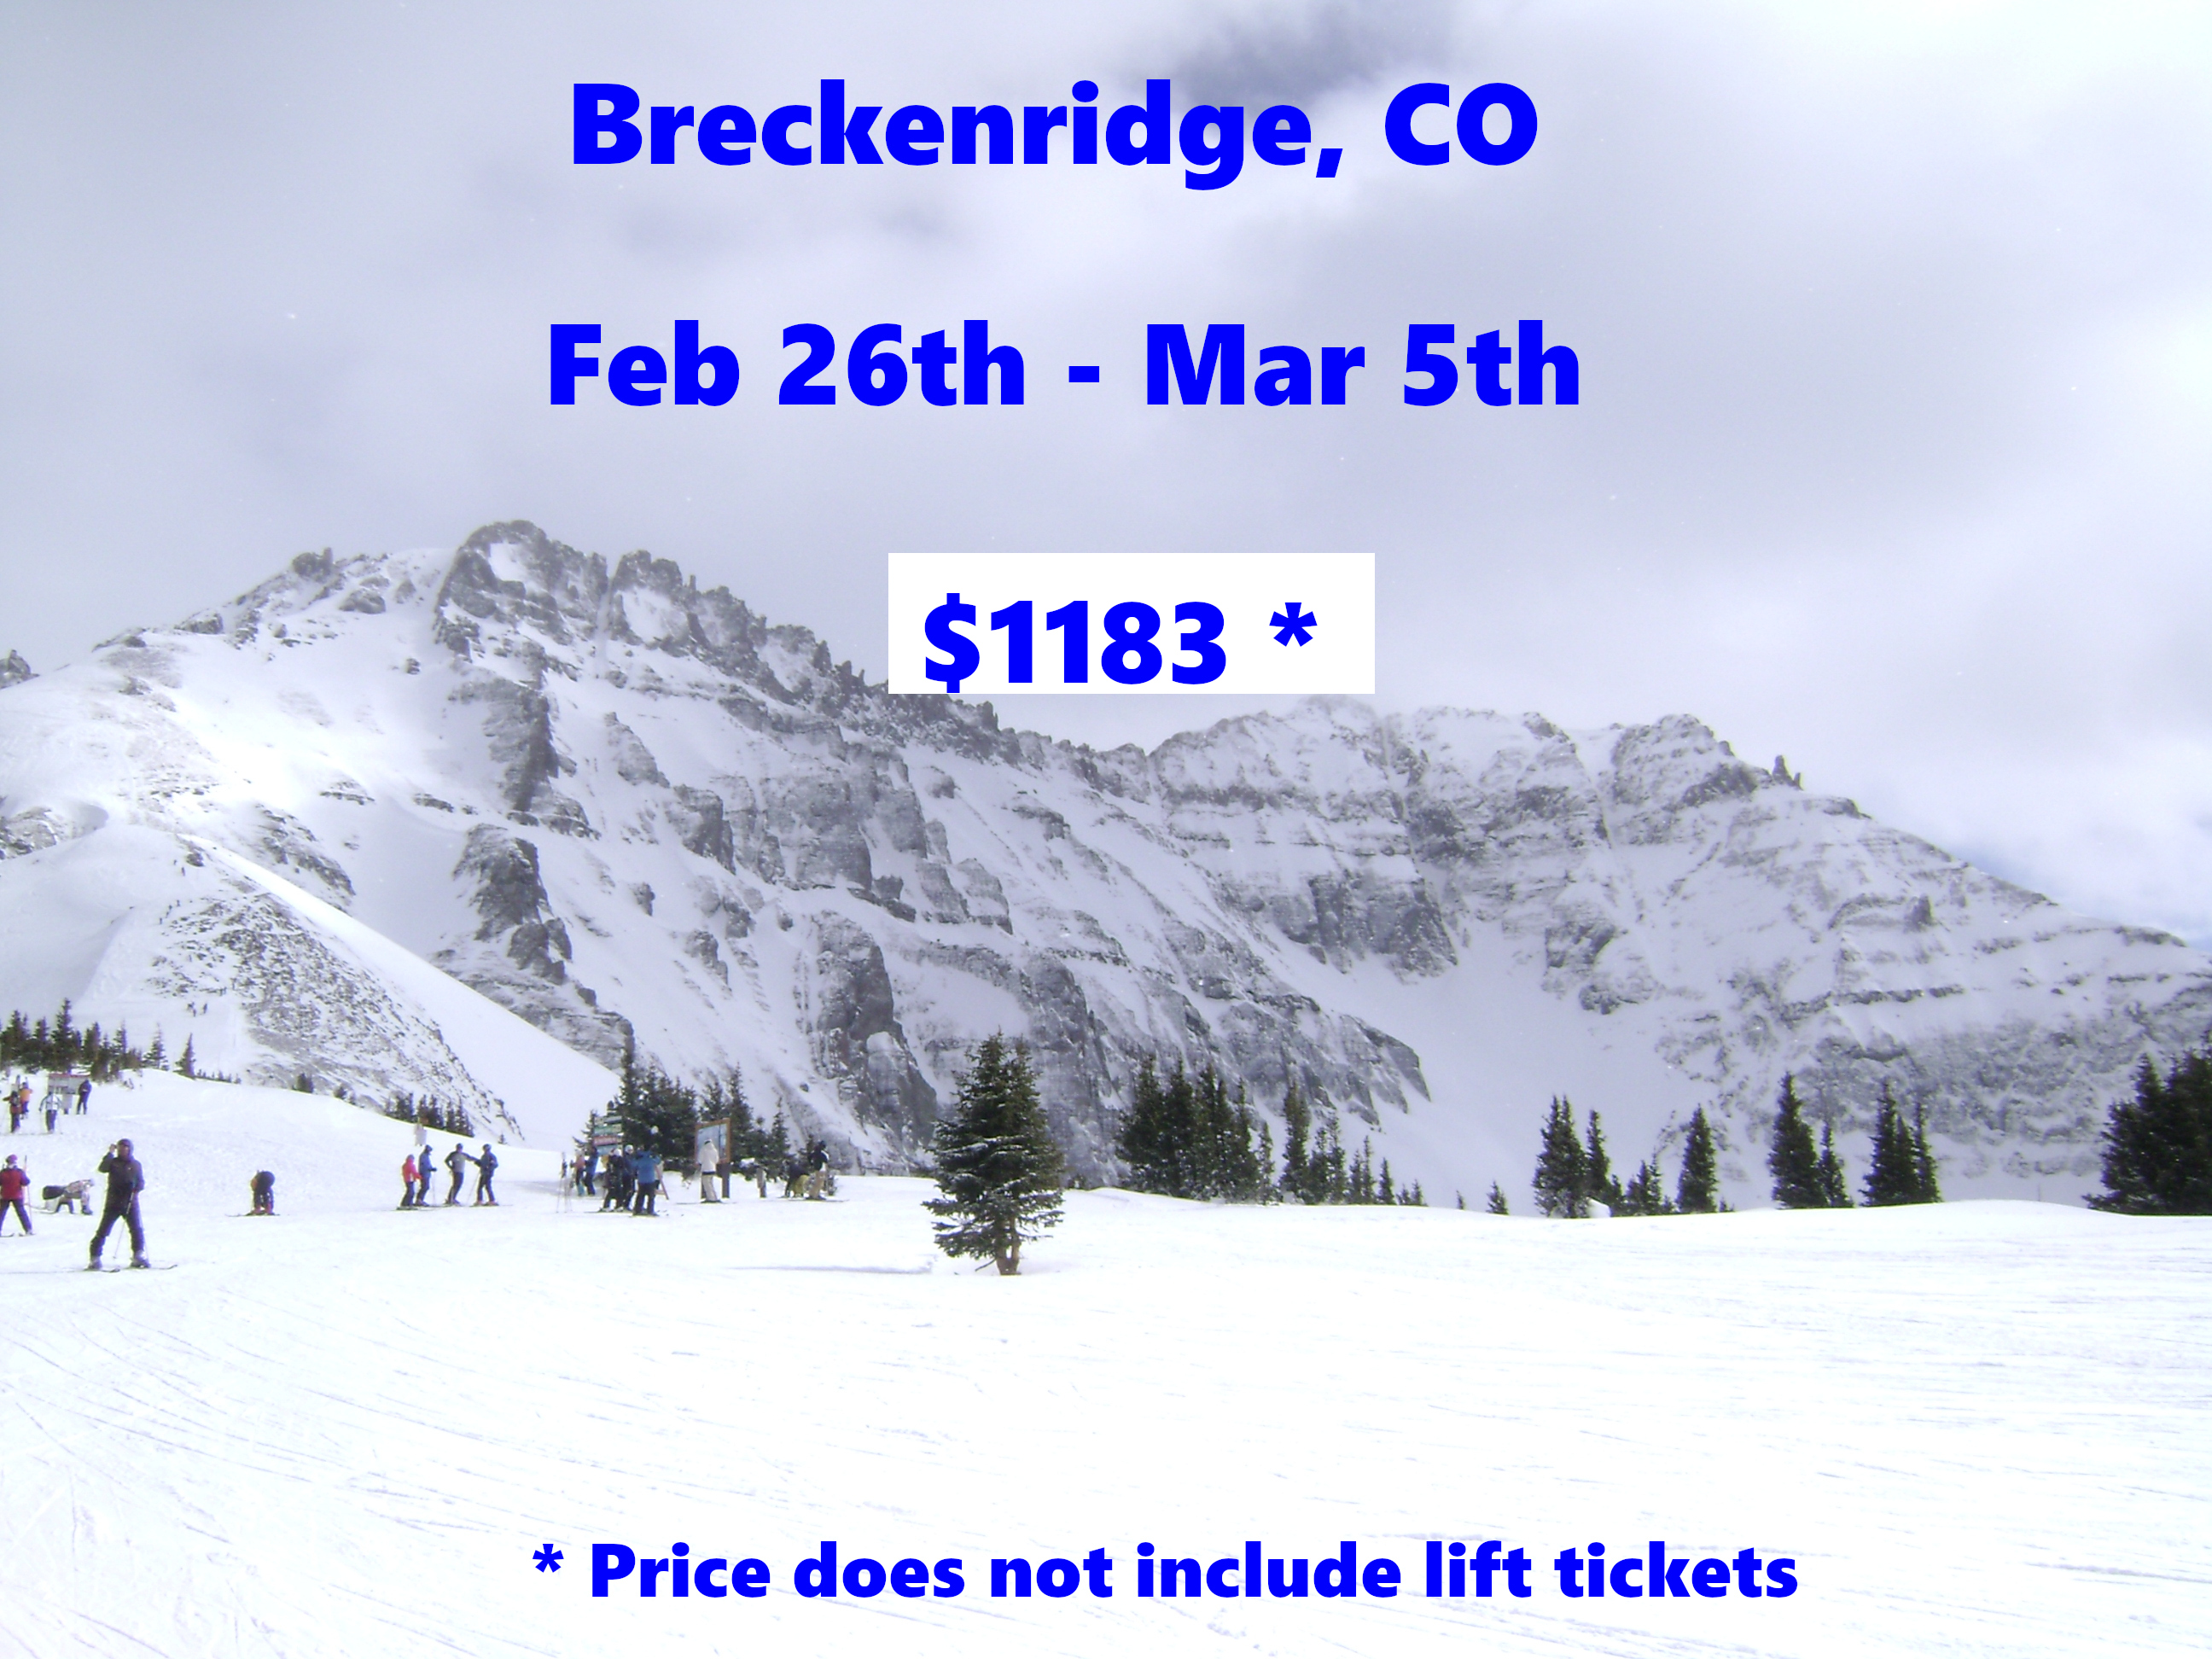 Breckenridge, CO 2022 trip